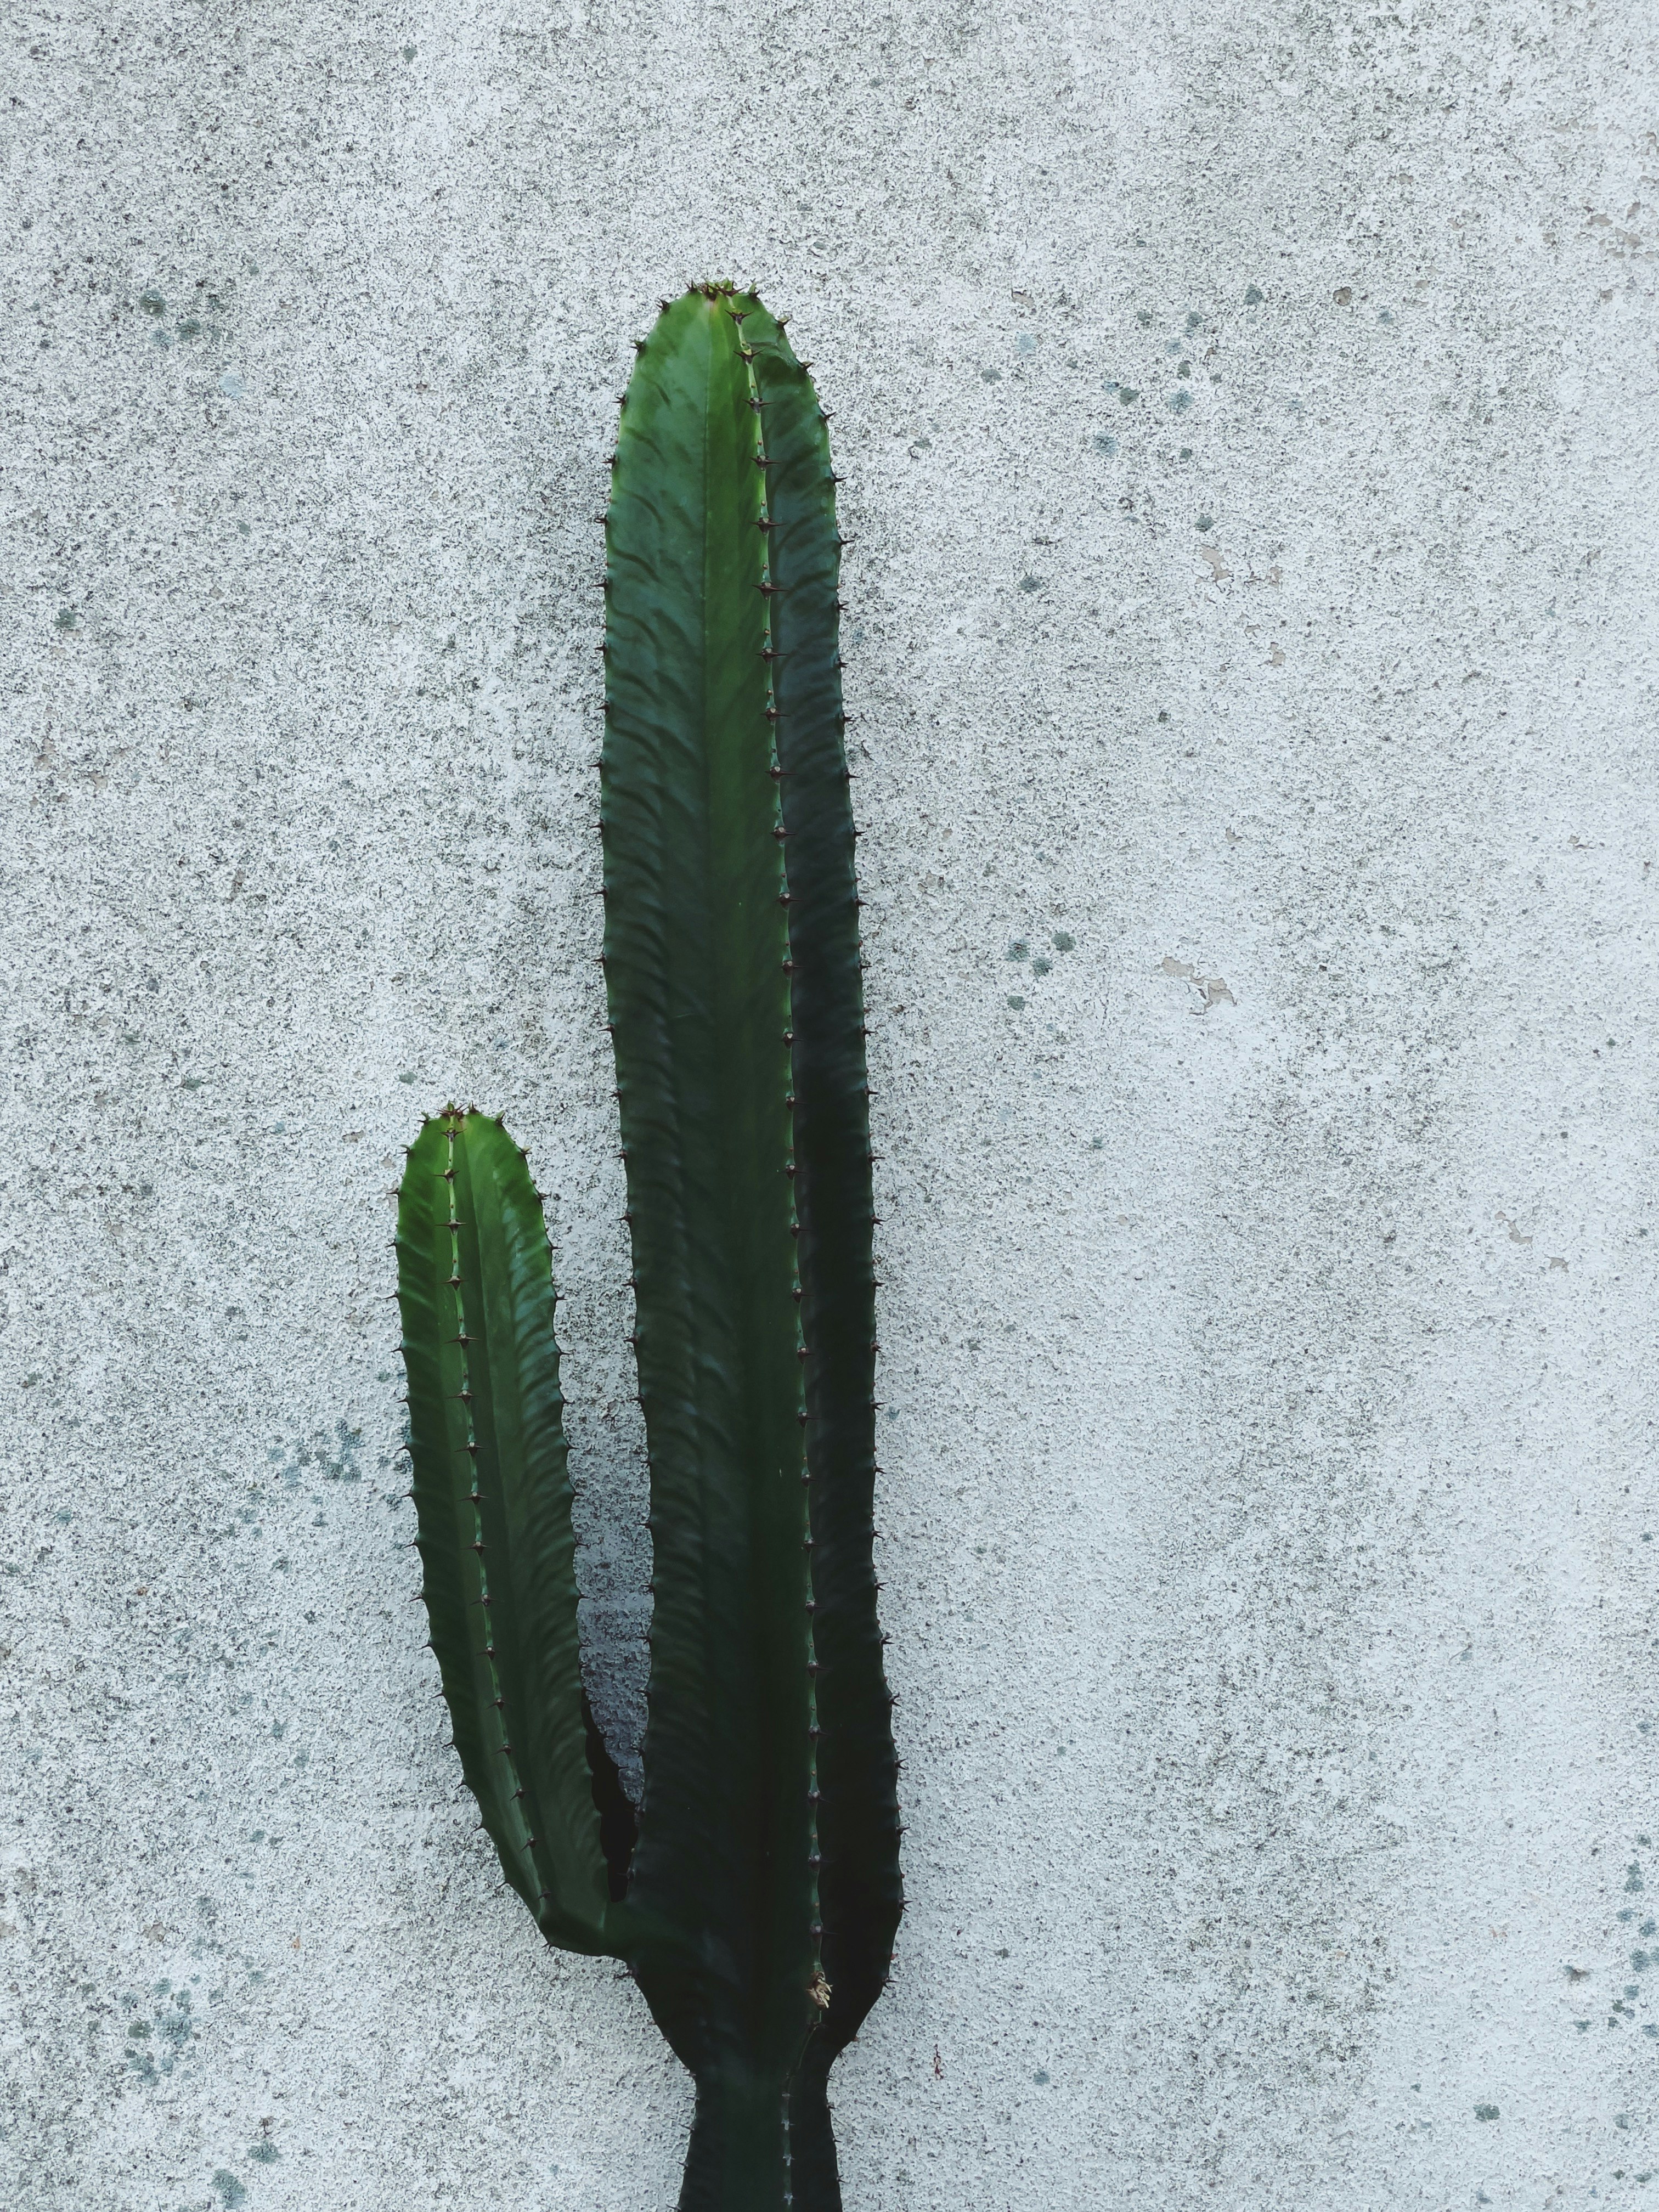 green cactus on gray concrete floor